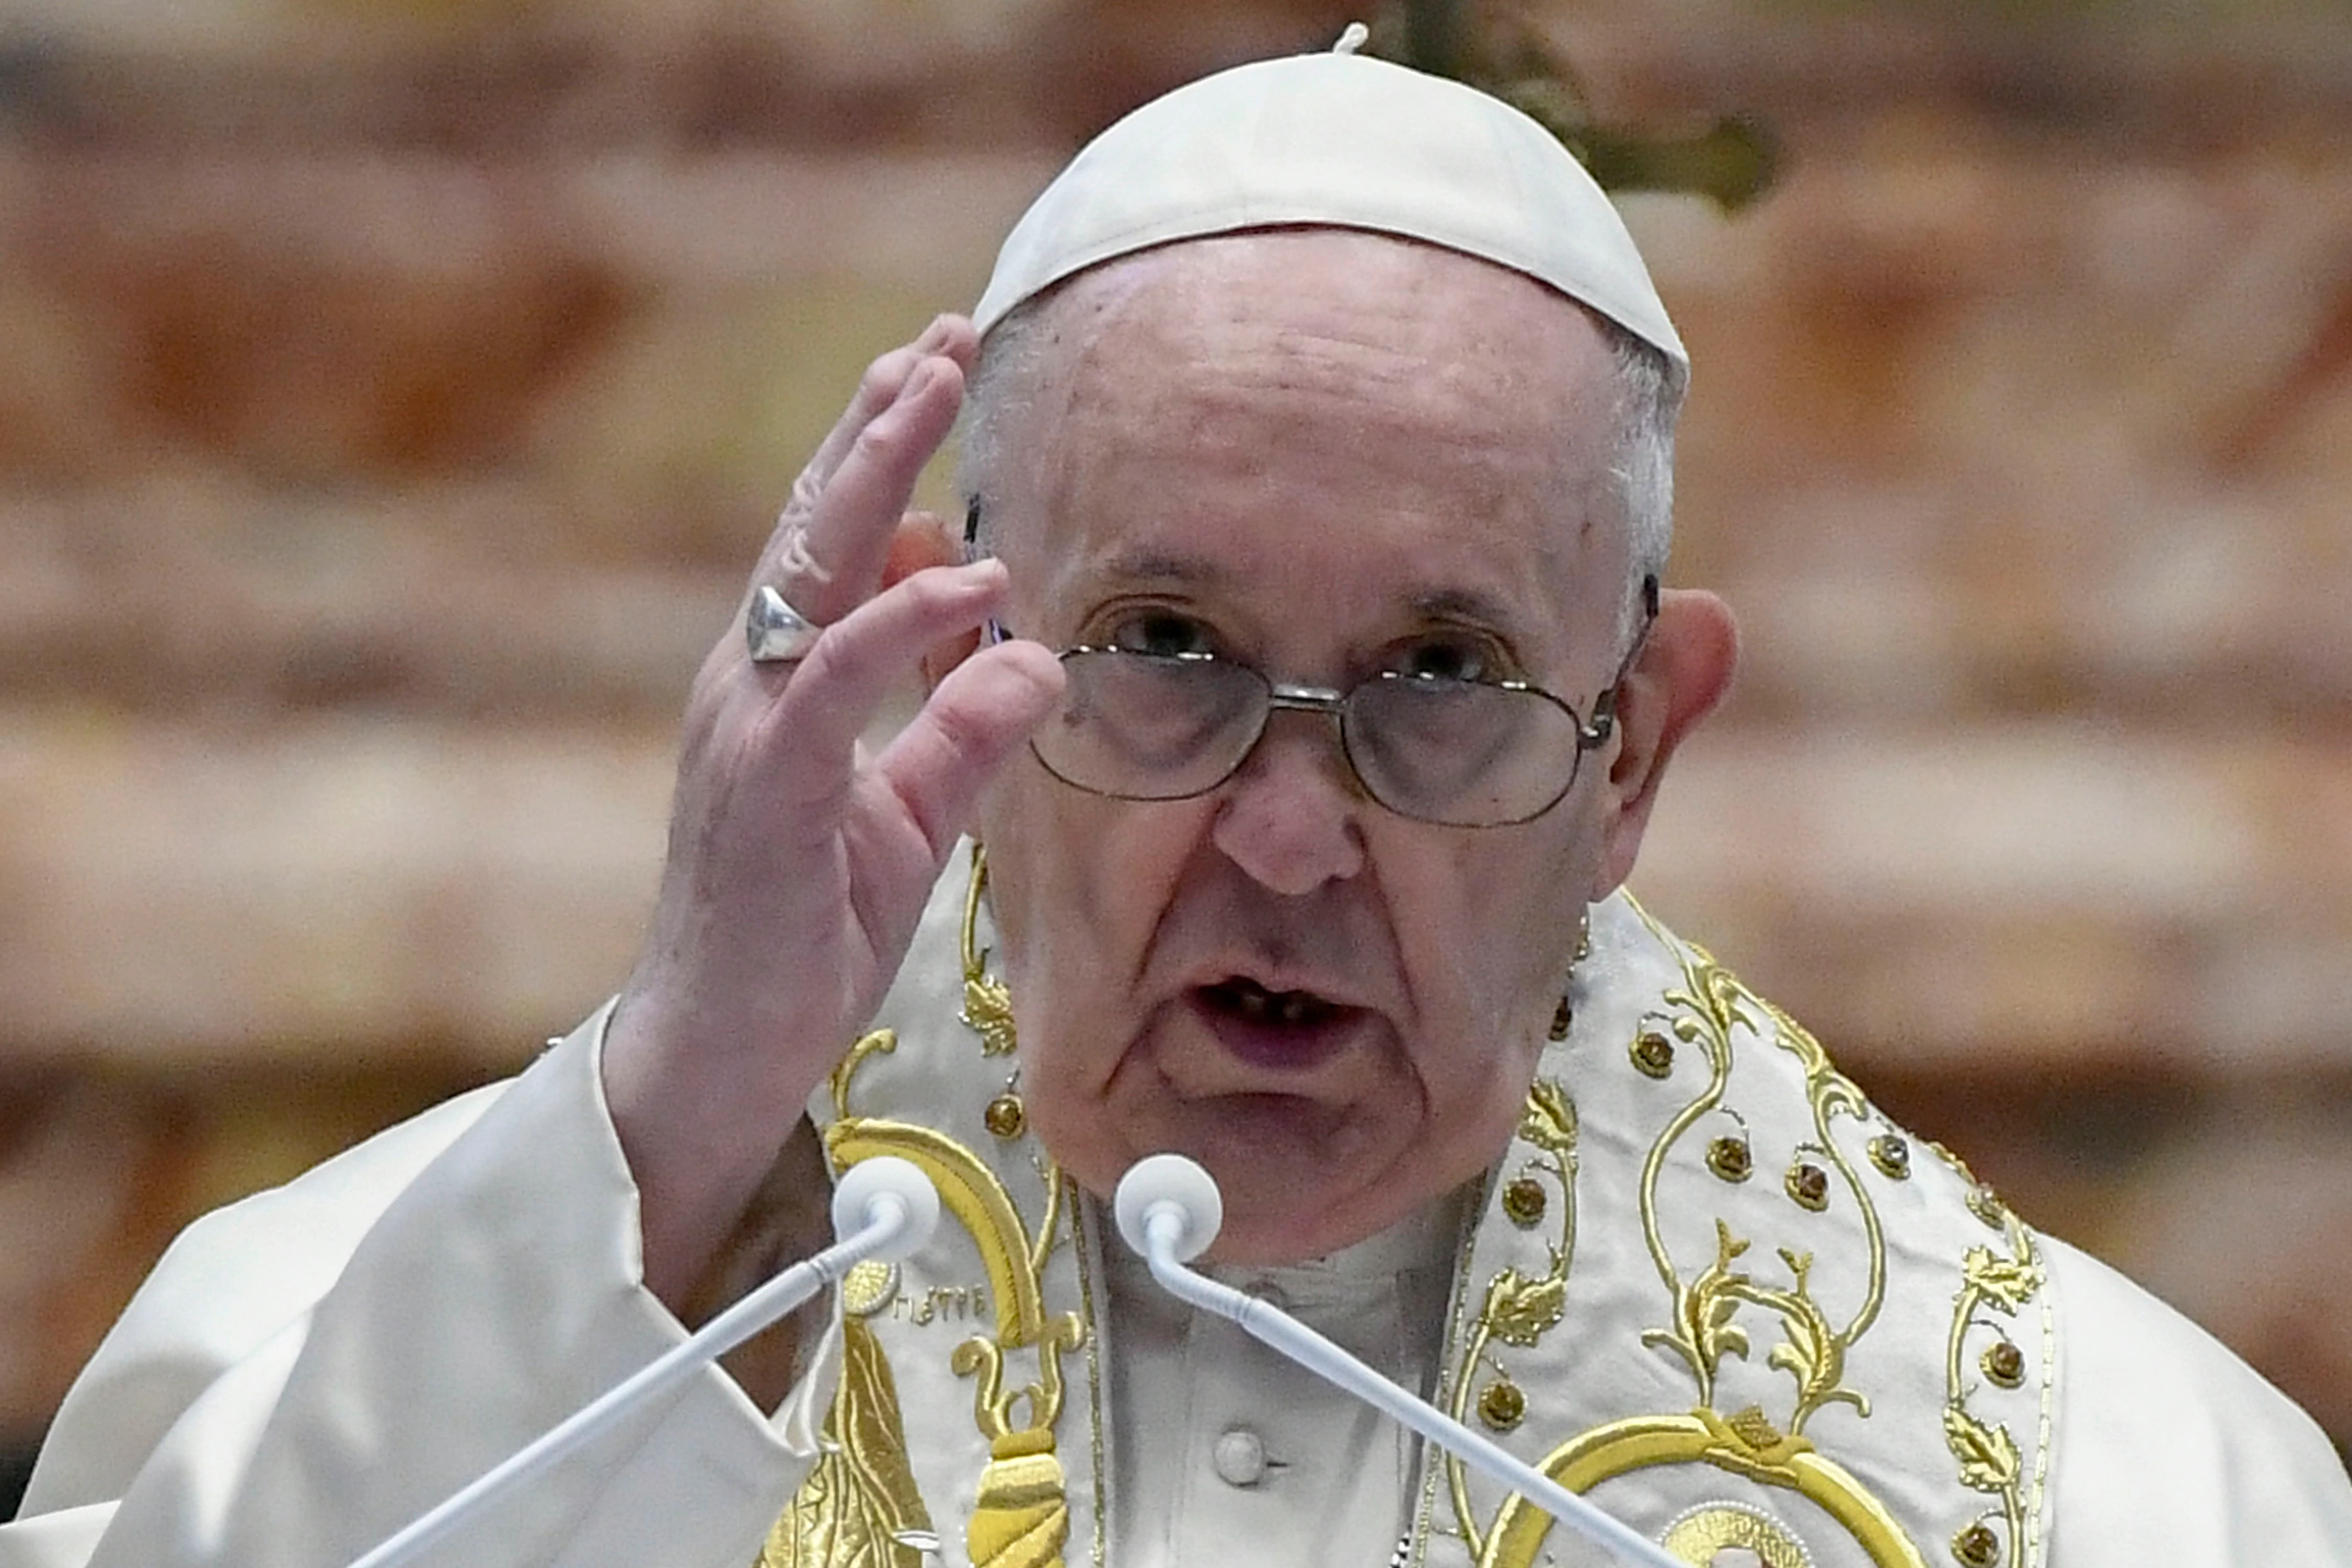 Vaticano expresó su "dolor" por abusos, a la espera de examinar estudio que acusa a Benedicto XVI de inacción